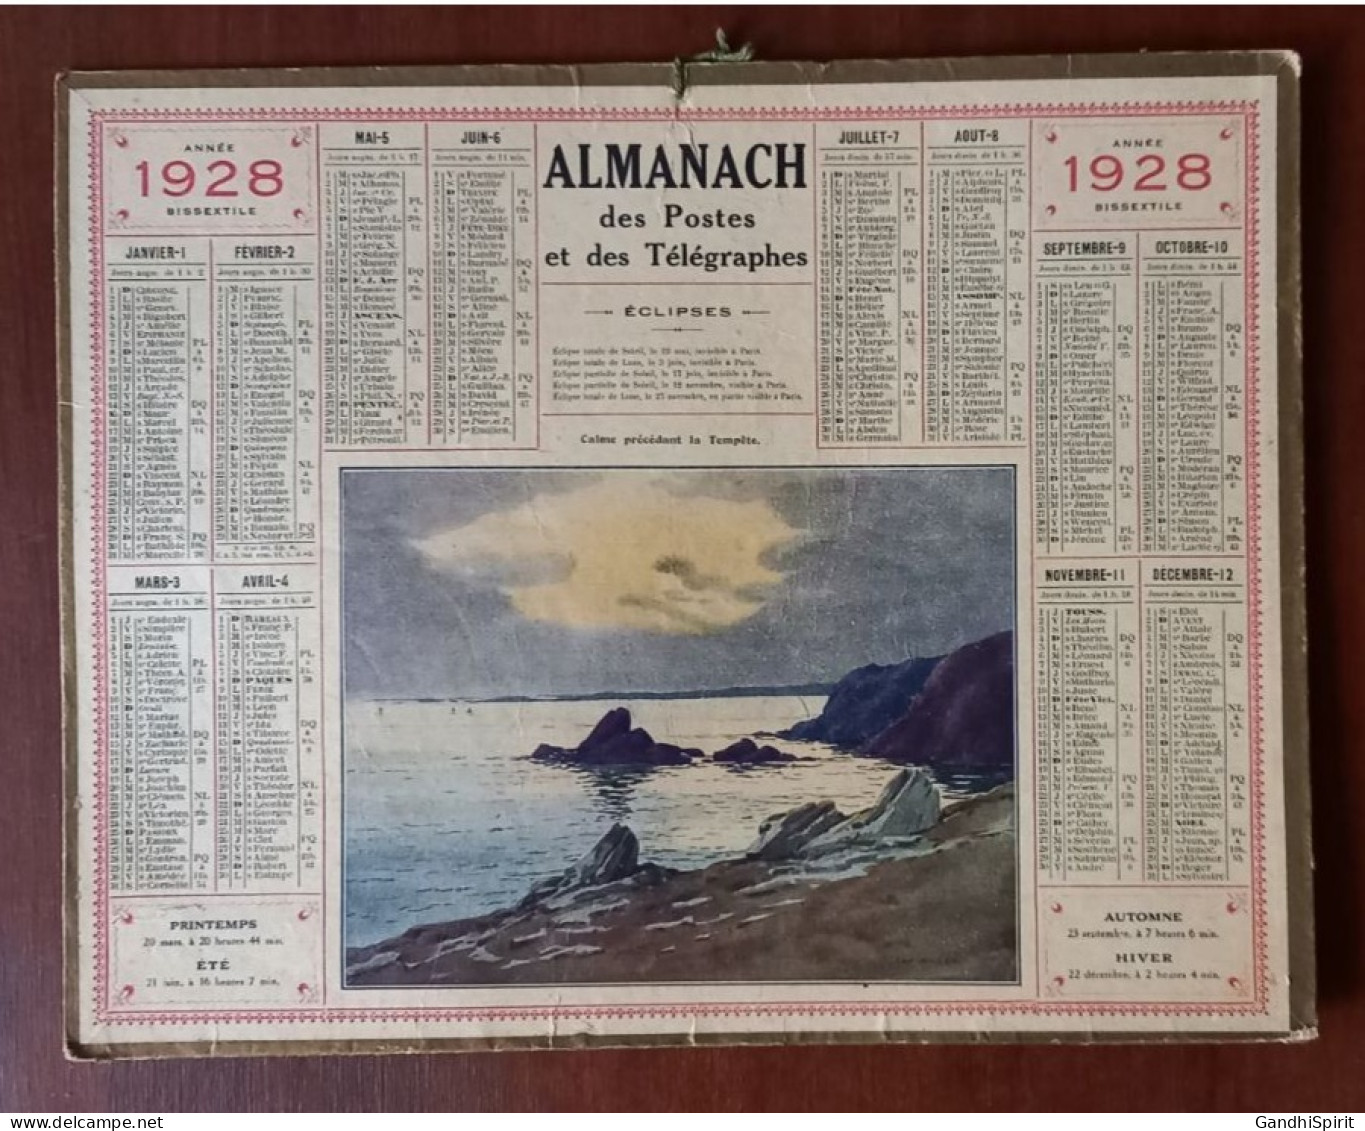 1928 Calendrier / Almanach Illustré Par ??? Calme Précédant La Tempête (Bord De Mer) Année Bissextile - Grossformat : 1921-40